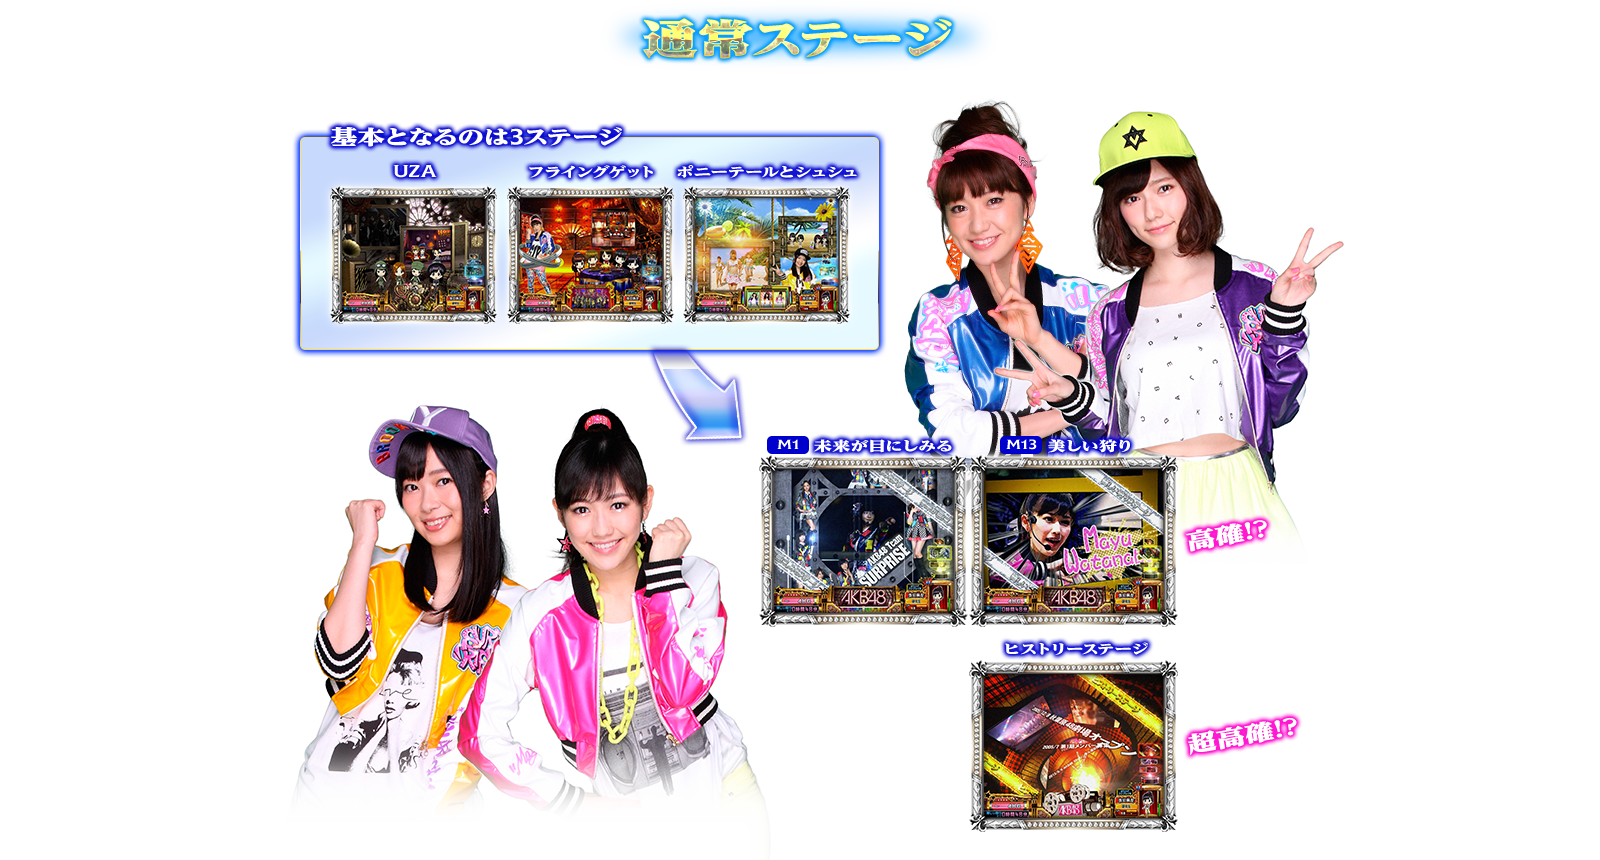 ぱちスロAKB48 バラの儀式の演出紹介。通常時の通常ステージです。AKB48ファン、スロット初心者、ヘビーユーザーまで誰もが楽しめるDDスペックで登場!!